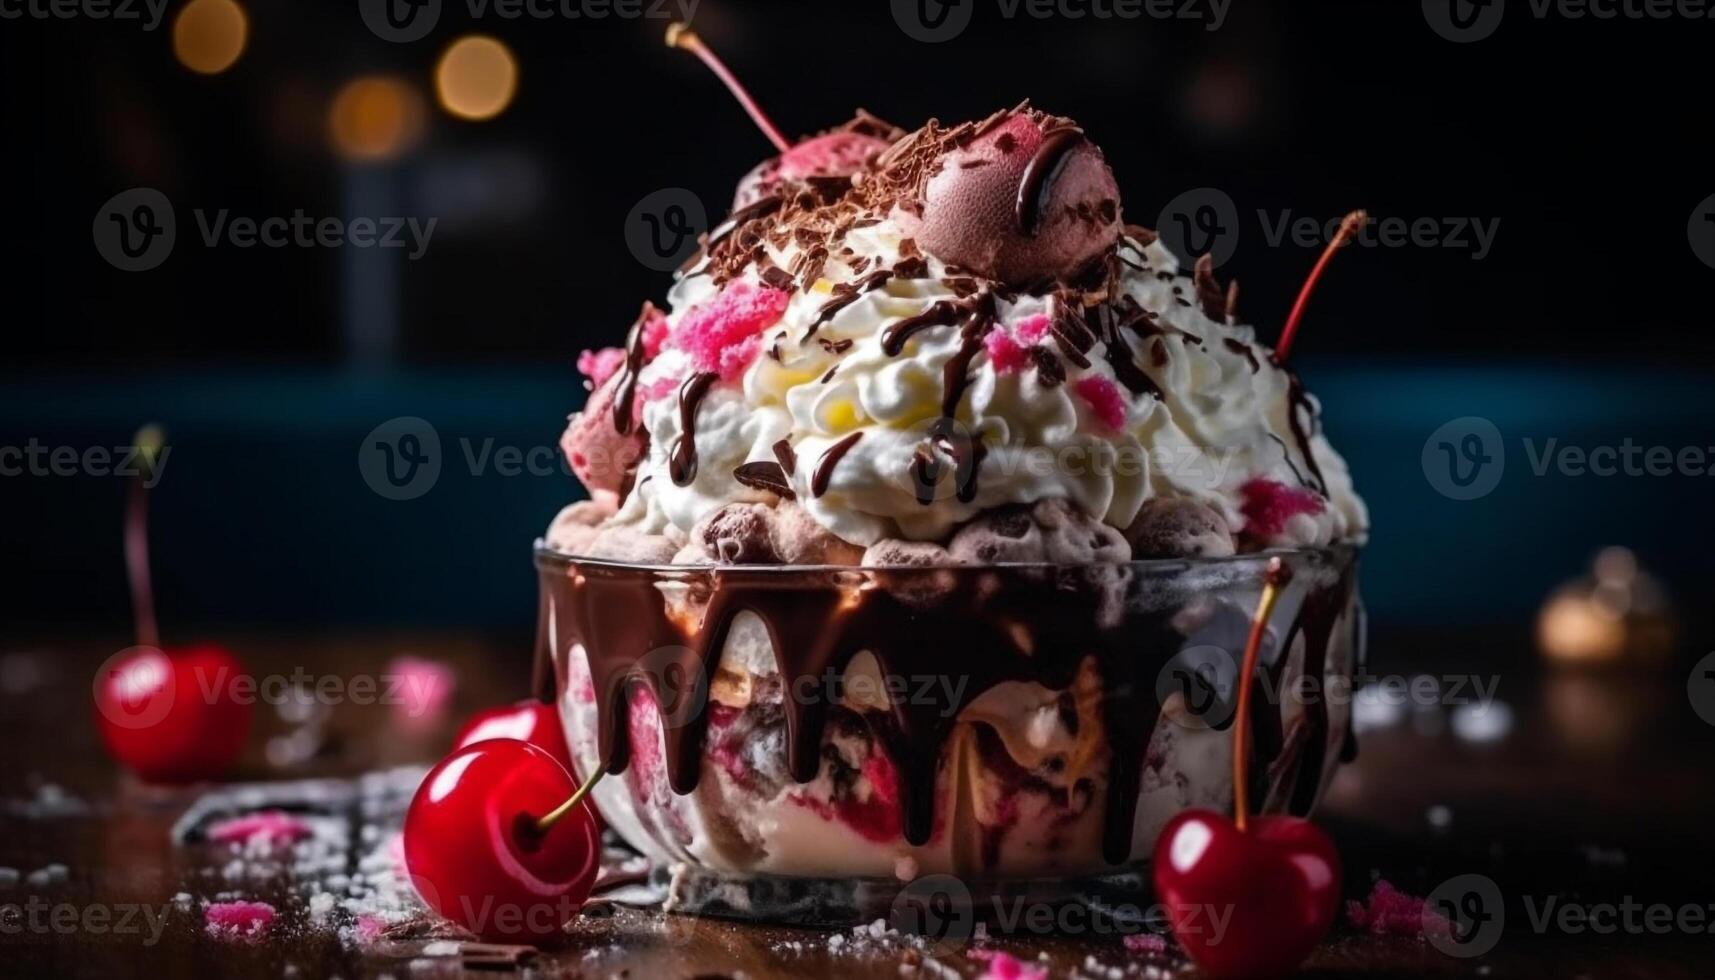 Indulgent homemade ice cream sundae with fresh berries and chocolate sauce generated by AI photo